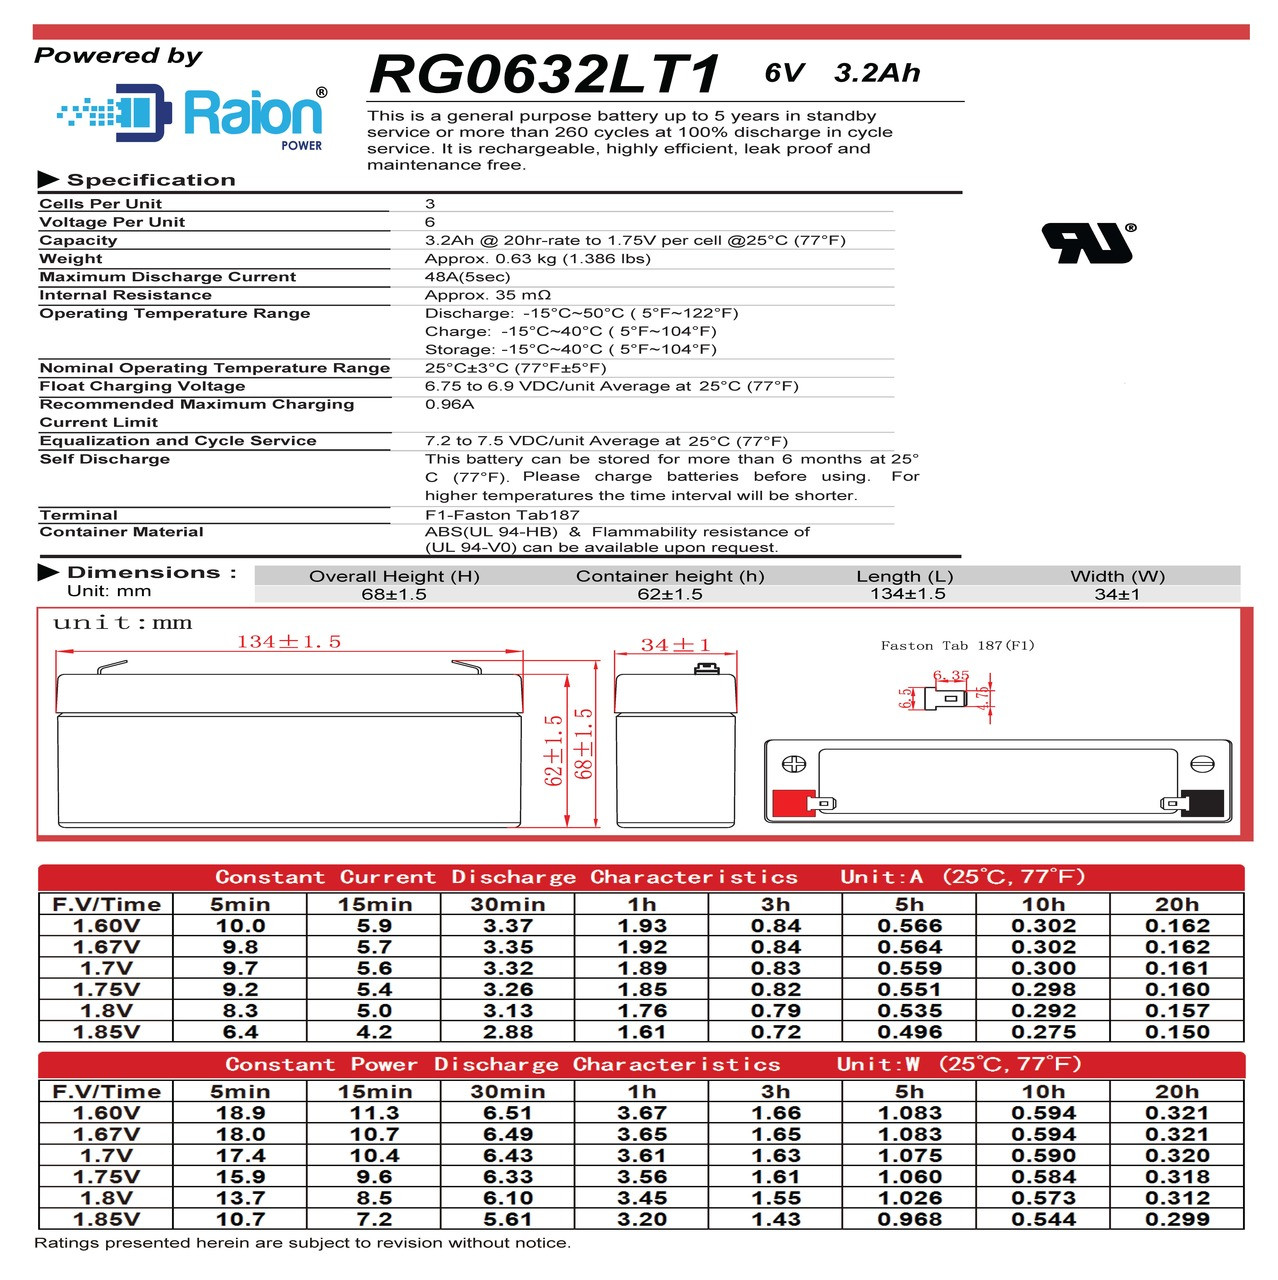 Raion Power RG0632LT1 6V 3.2Ah Battery Data Sheet for Ultramax NP3.2-6